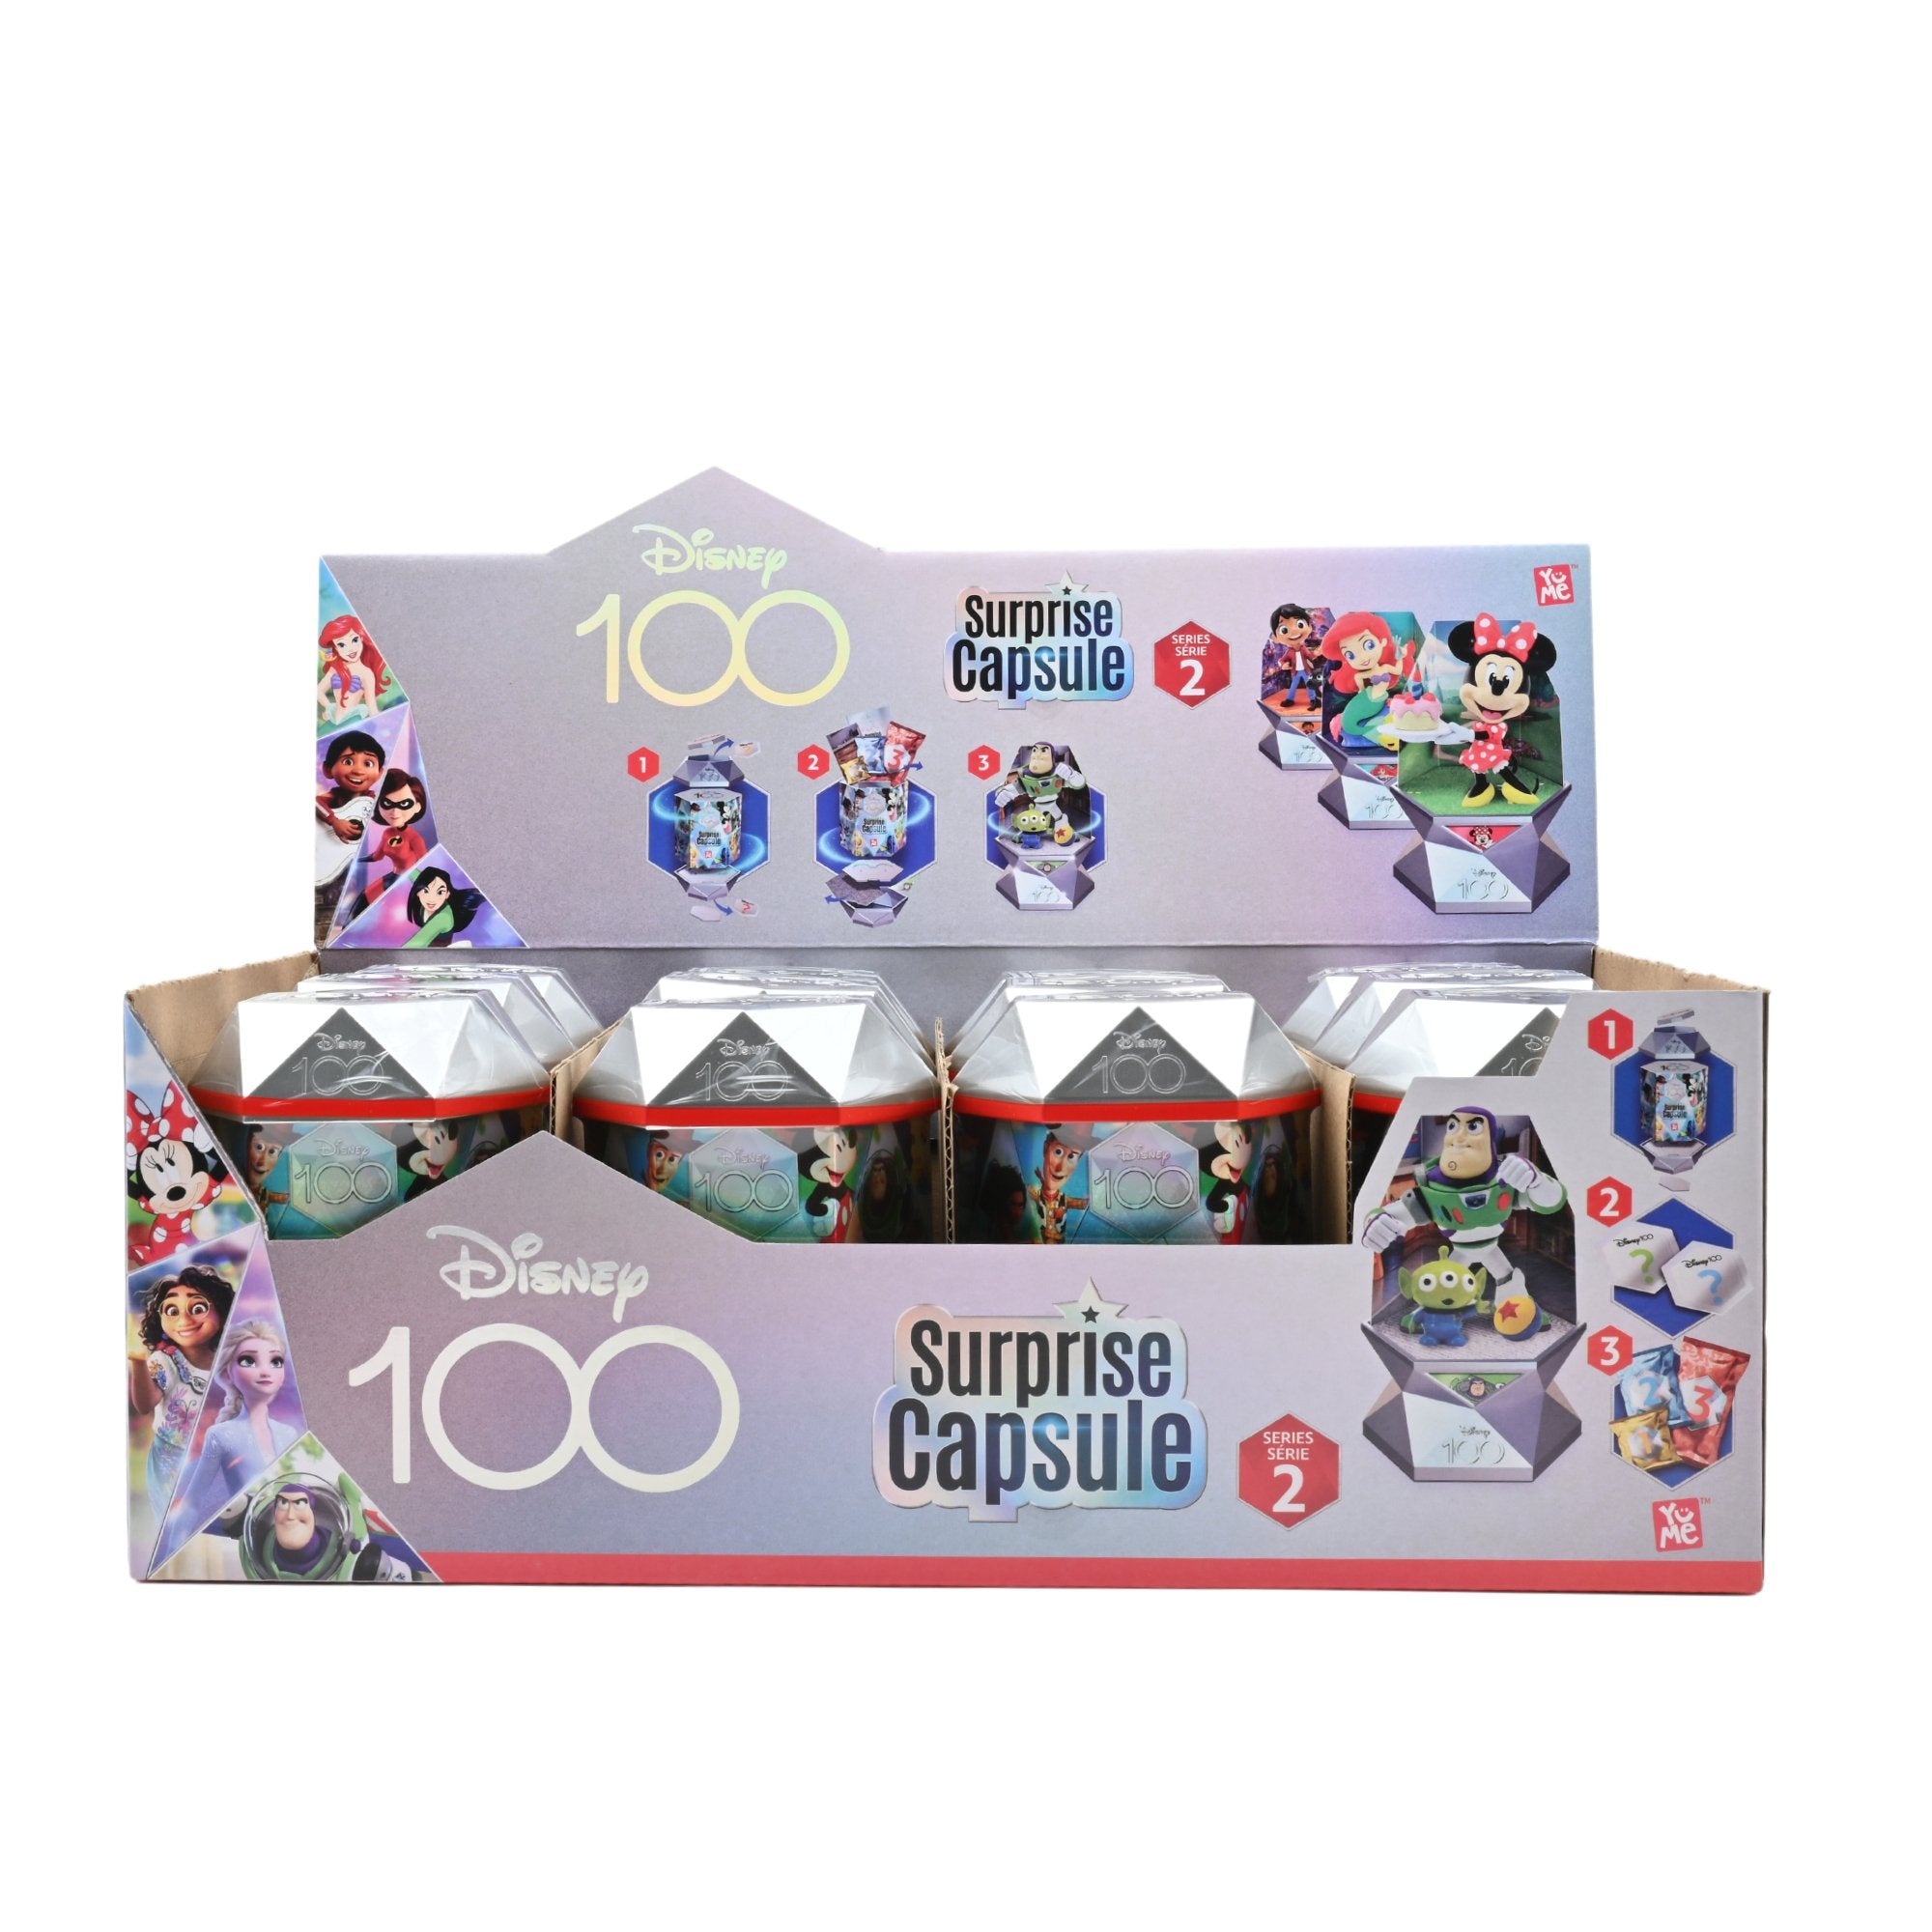 Surprise Capsules Box Disney 100 Series 2